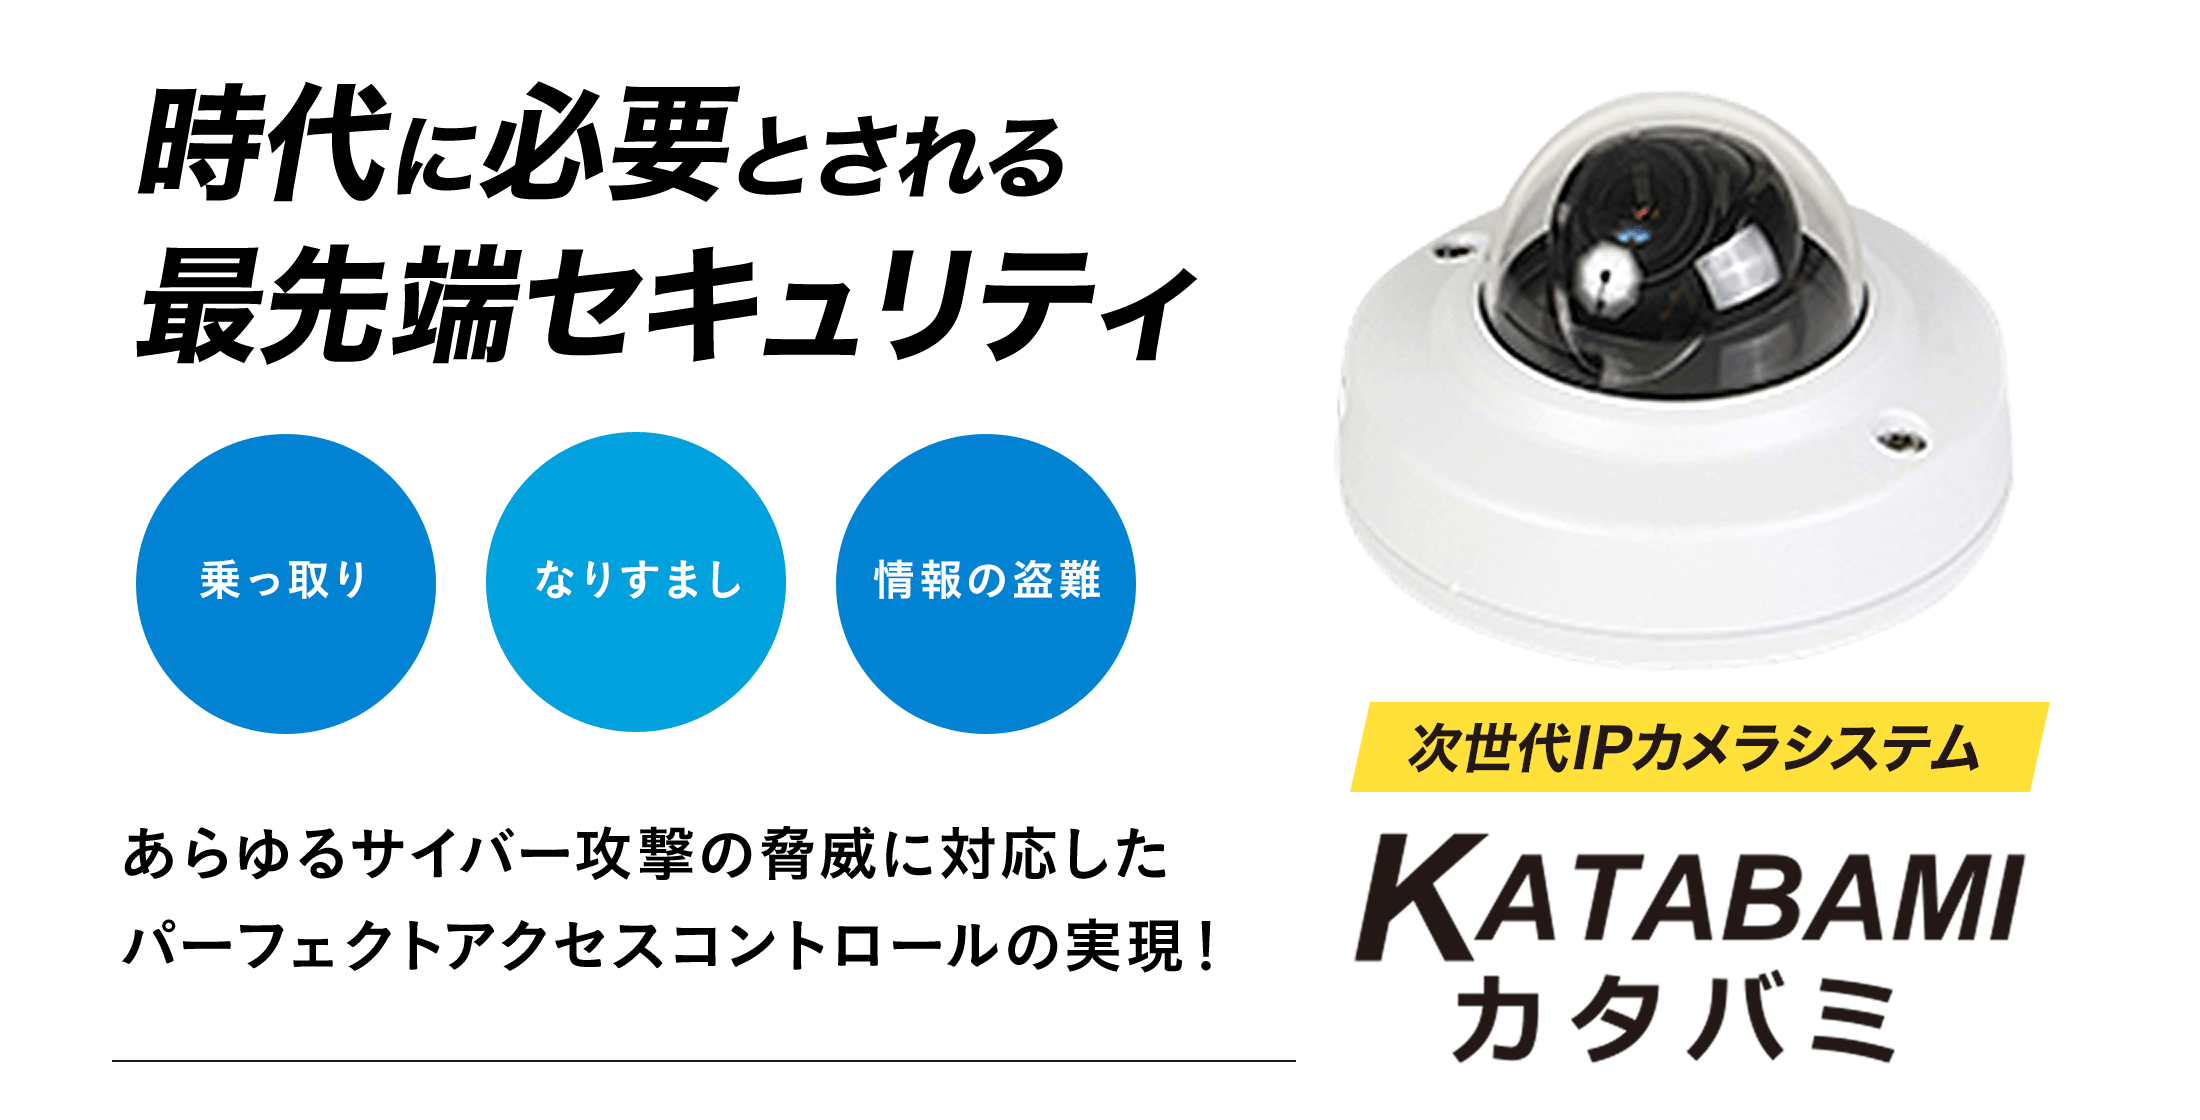 次世代IPカメラシステム KATABAMI カタバミ